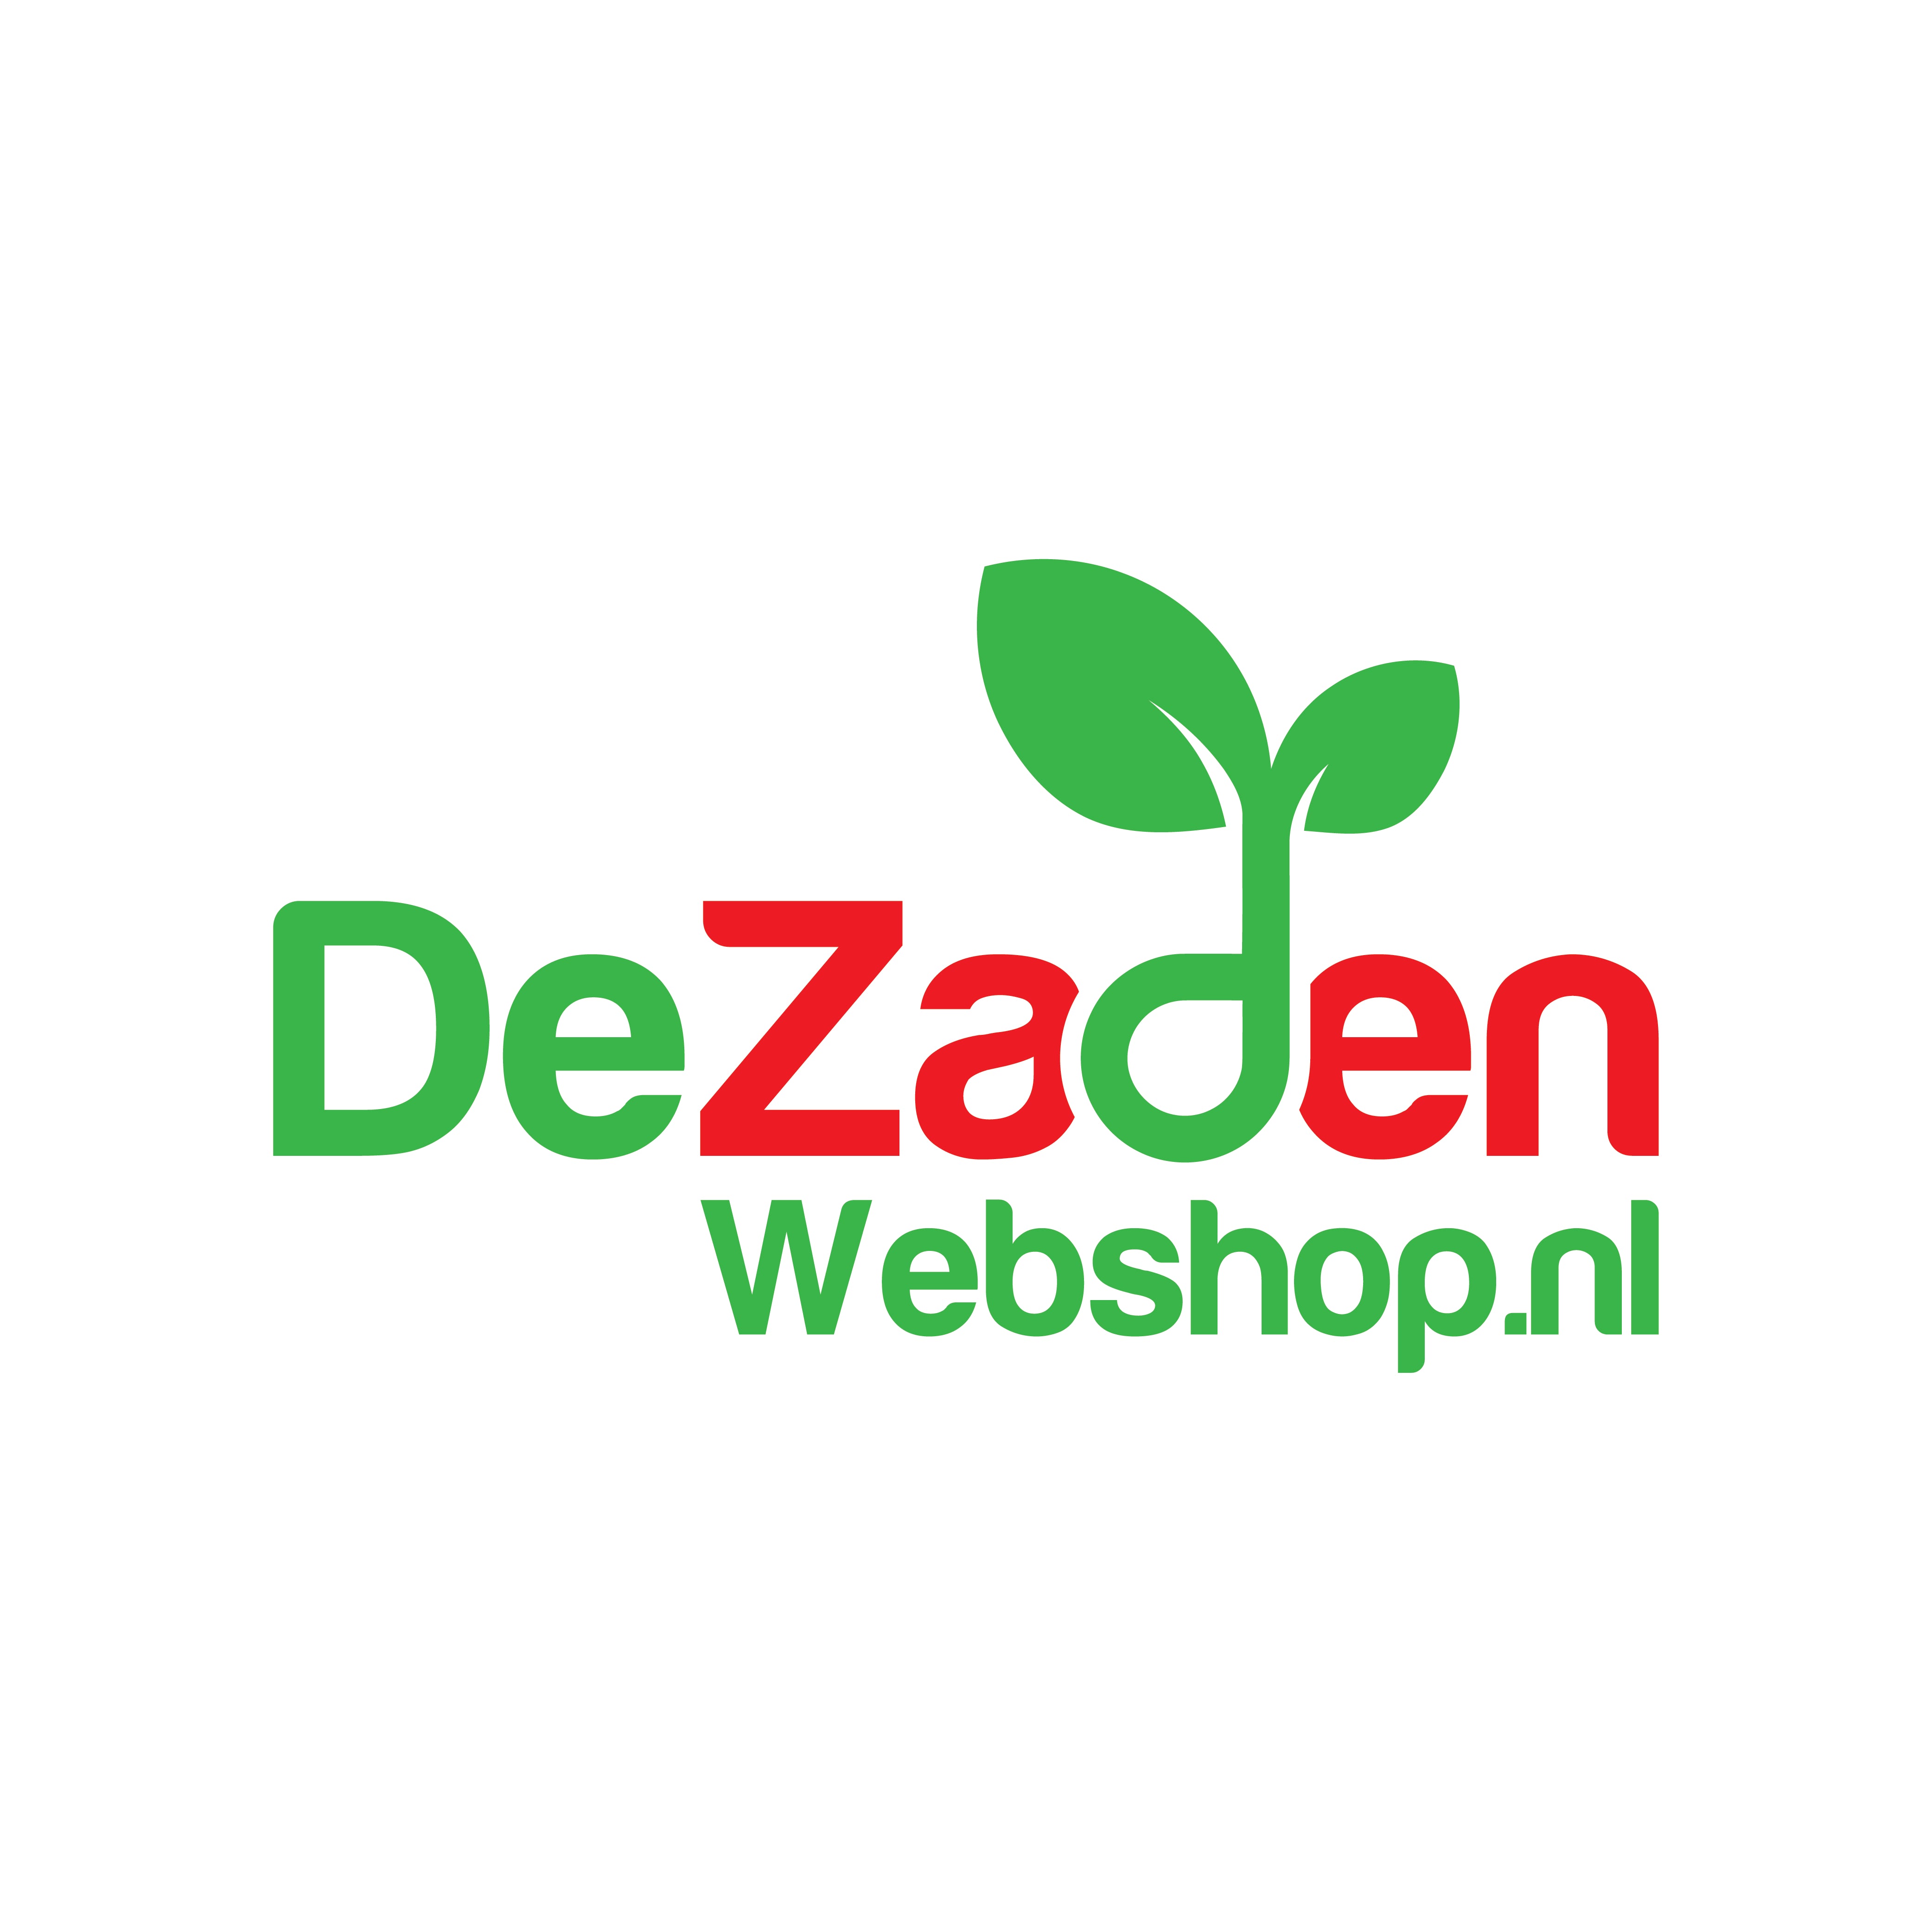 DeZadenWebshop.nl